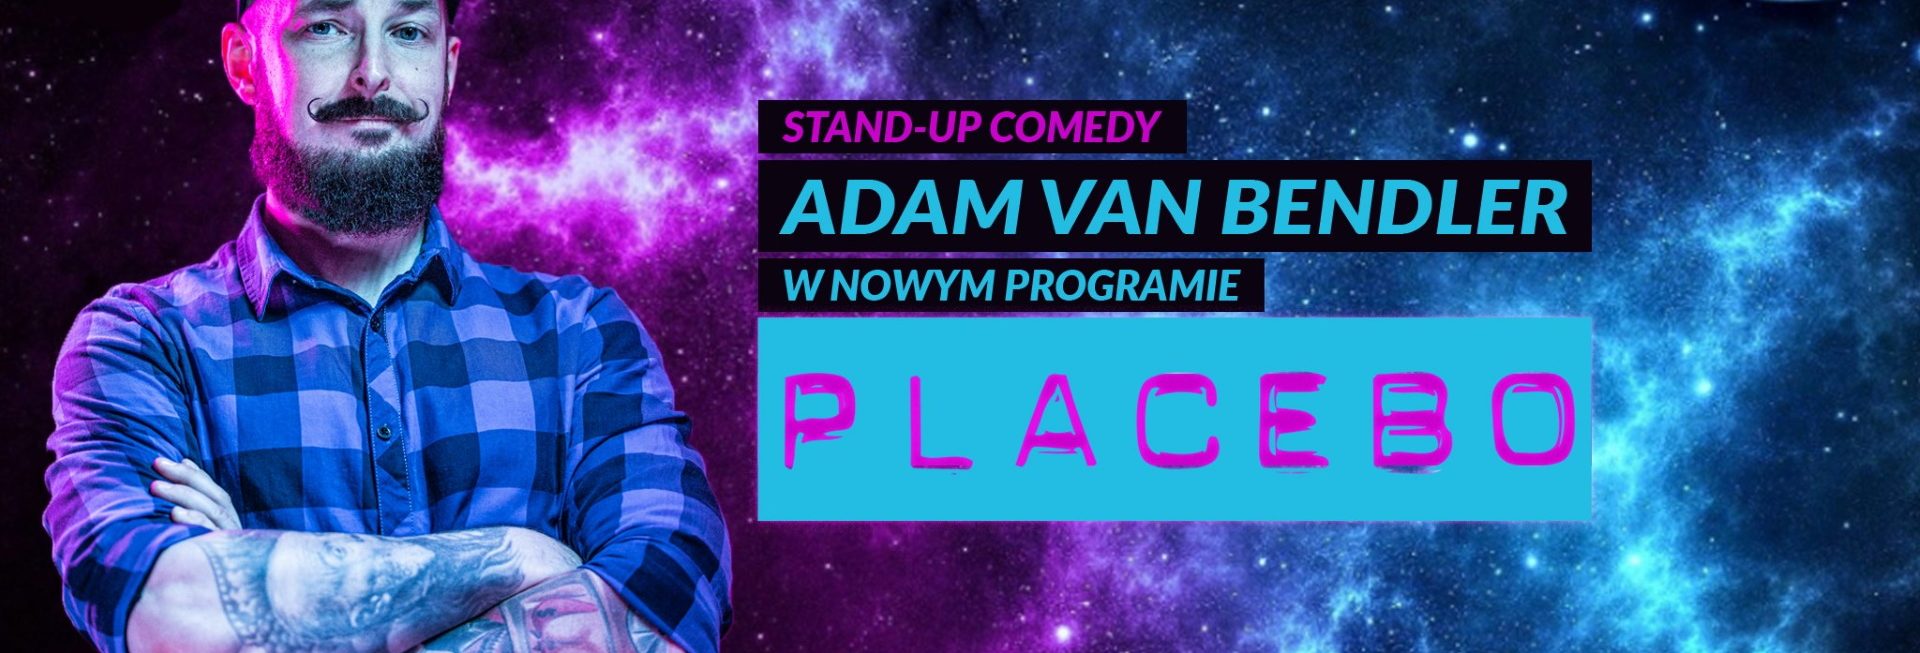 Plakat graficzny zapraszający do Olsztyna na występ Stand-up: Adam Van Bendler Program "Placebo" - Olsztyn 2021.